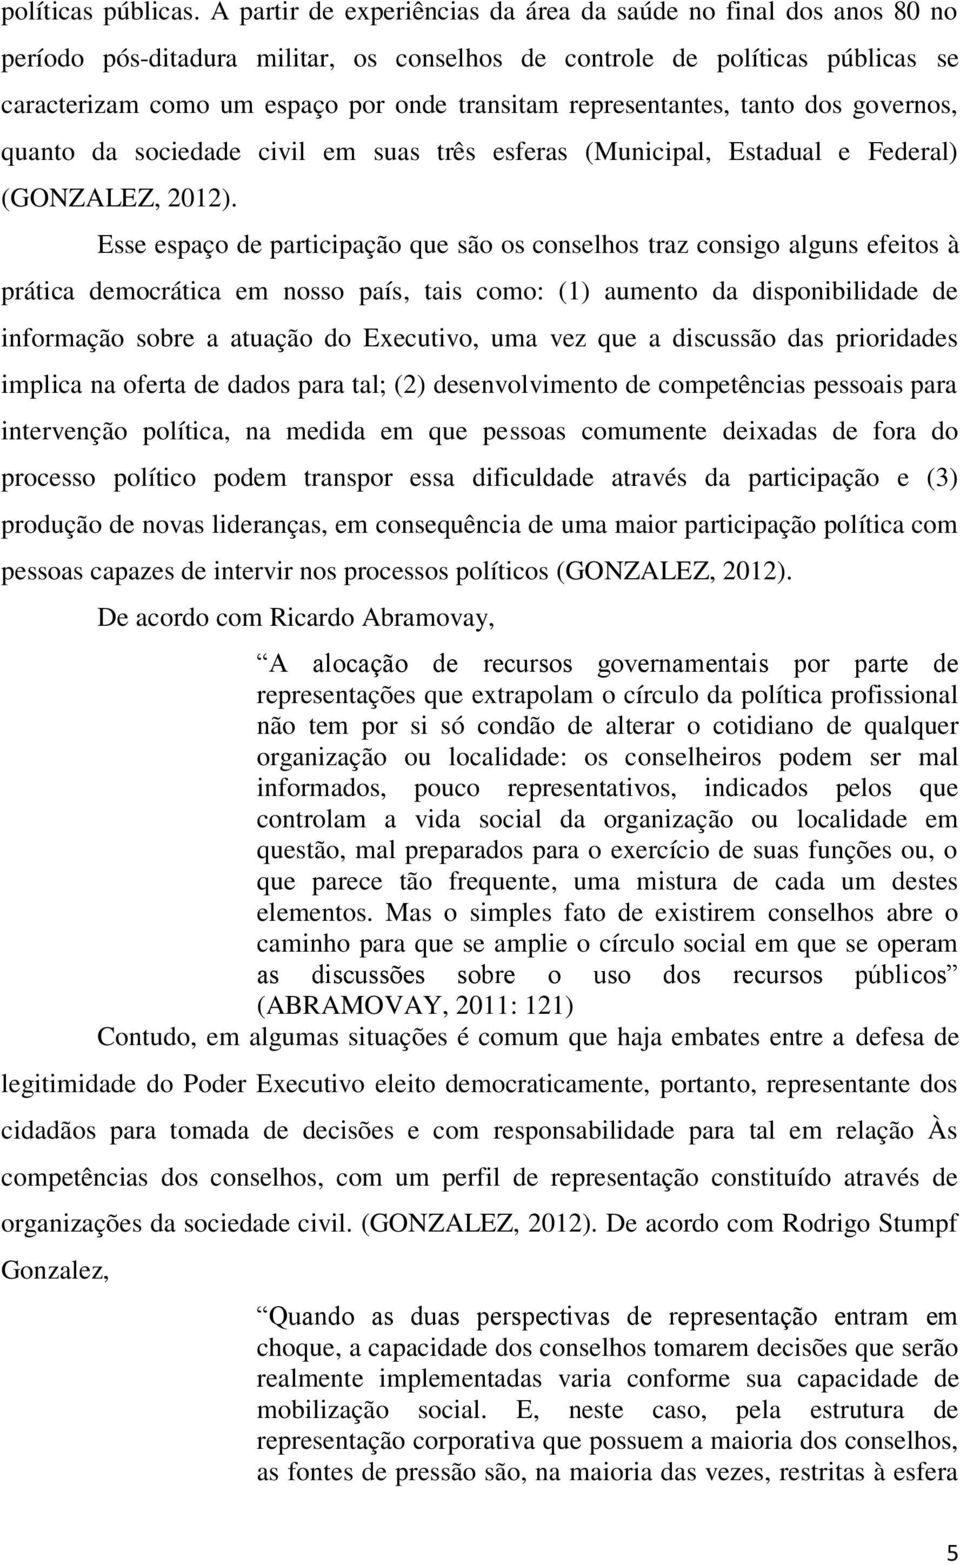 representantes, tanto dos governos, quanto da sociedade civil em suas três esferas (Municipal, Estadual e Federal) (GONZALEZ, 2012).